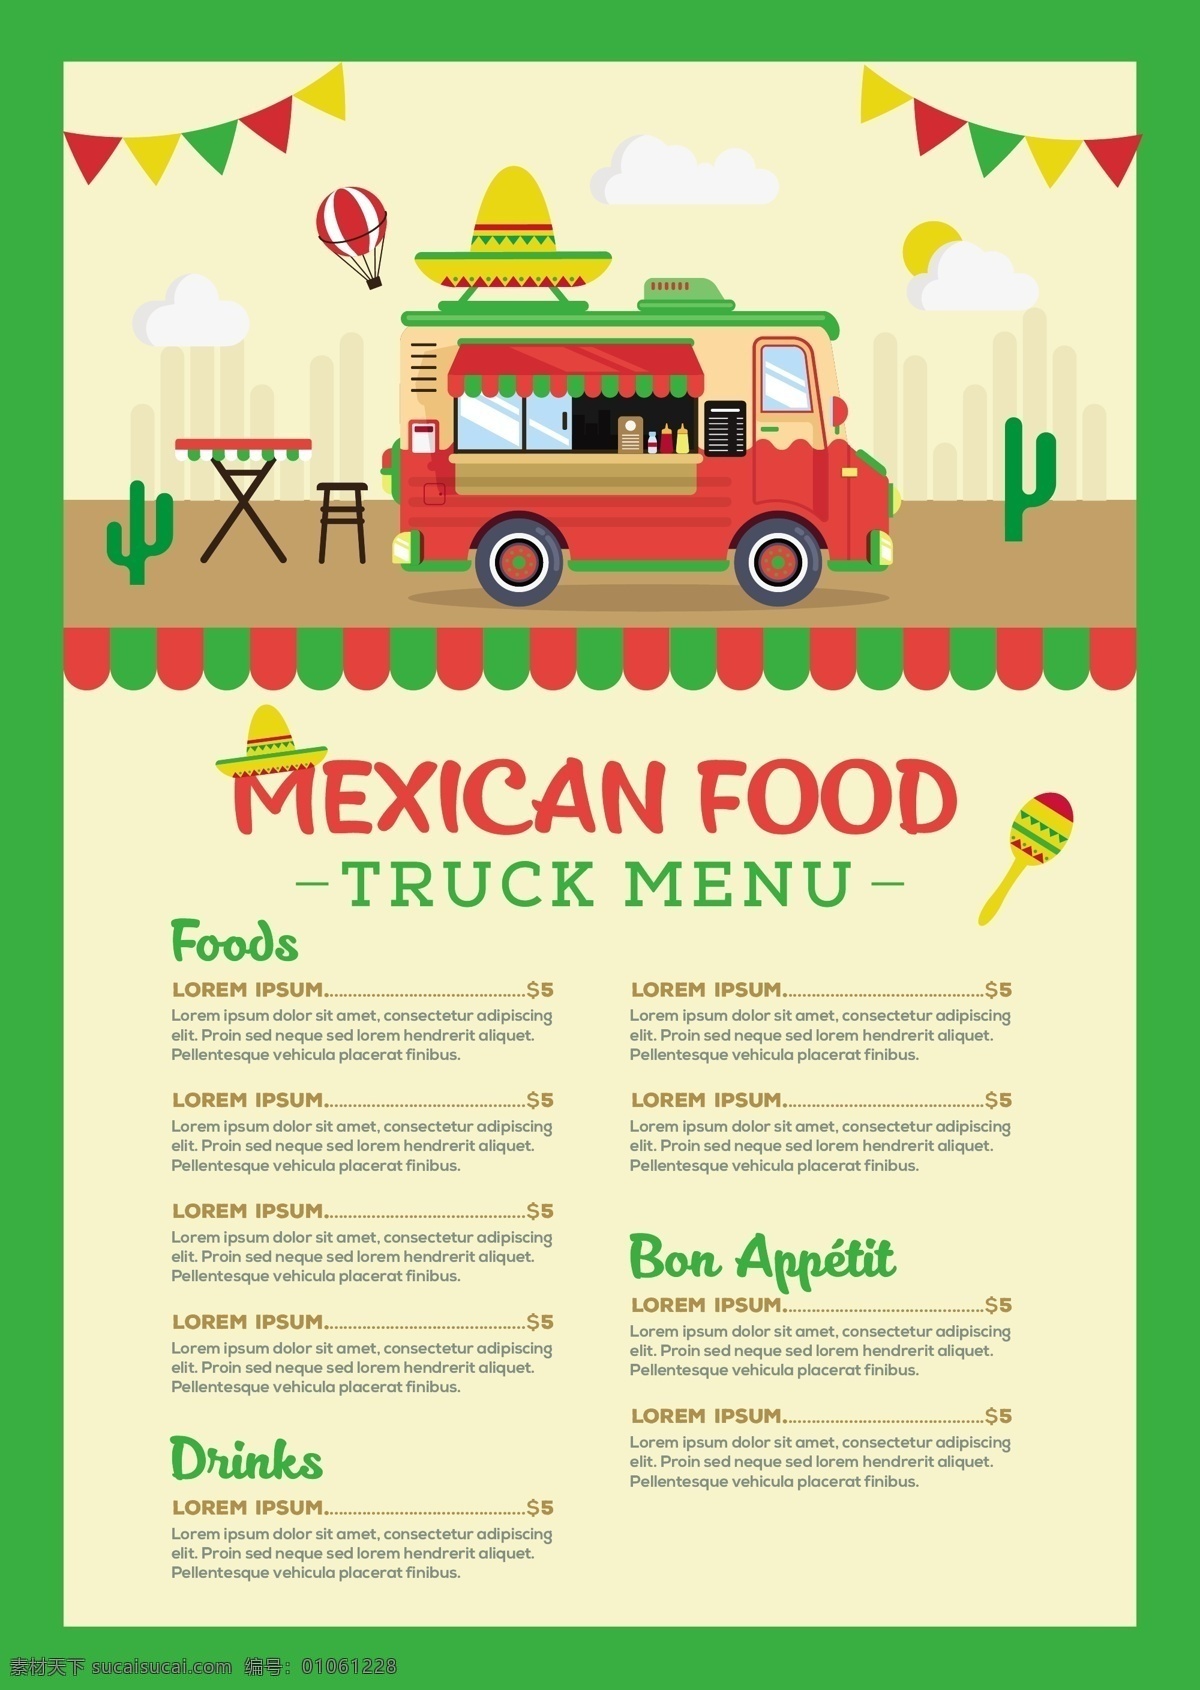 墨西哥 食品 车 菜单 模板 古董 餐厅 复古 卡车 彩色 餐厅菜单 厨师 平面 快餐 街道 现代 运输 平面设计 食物菜单 晚餐